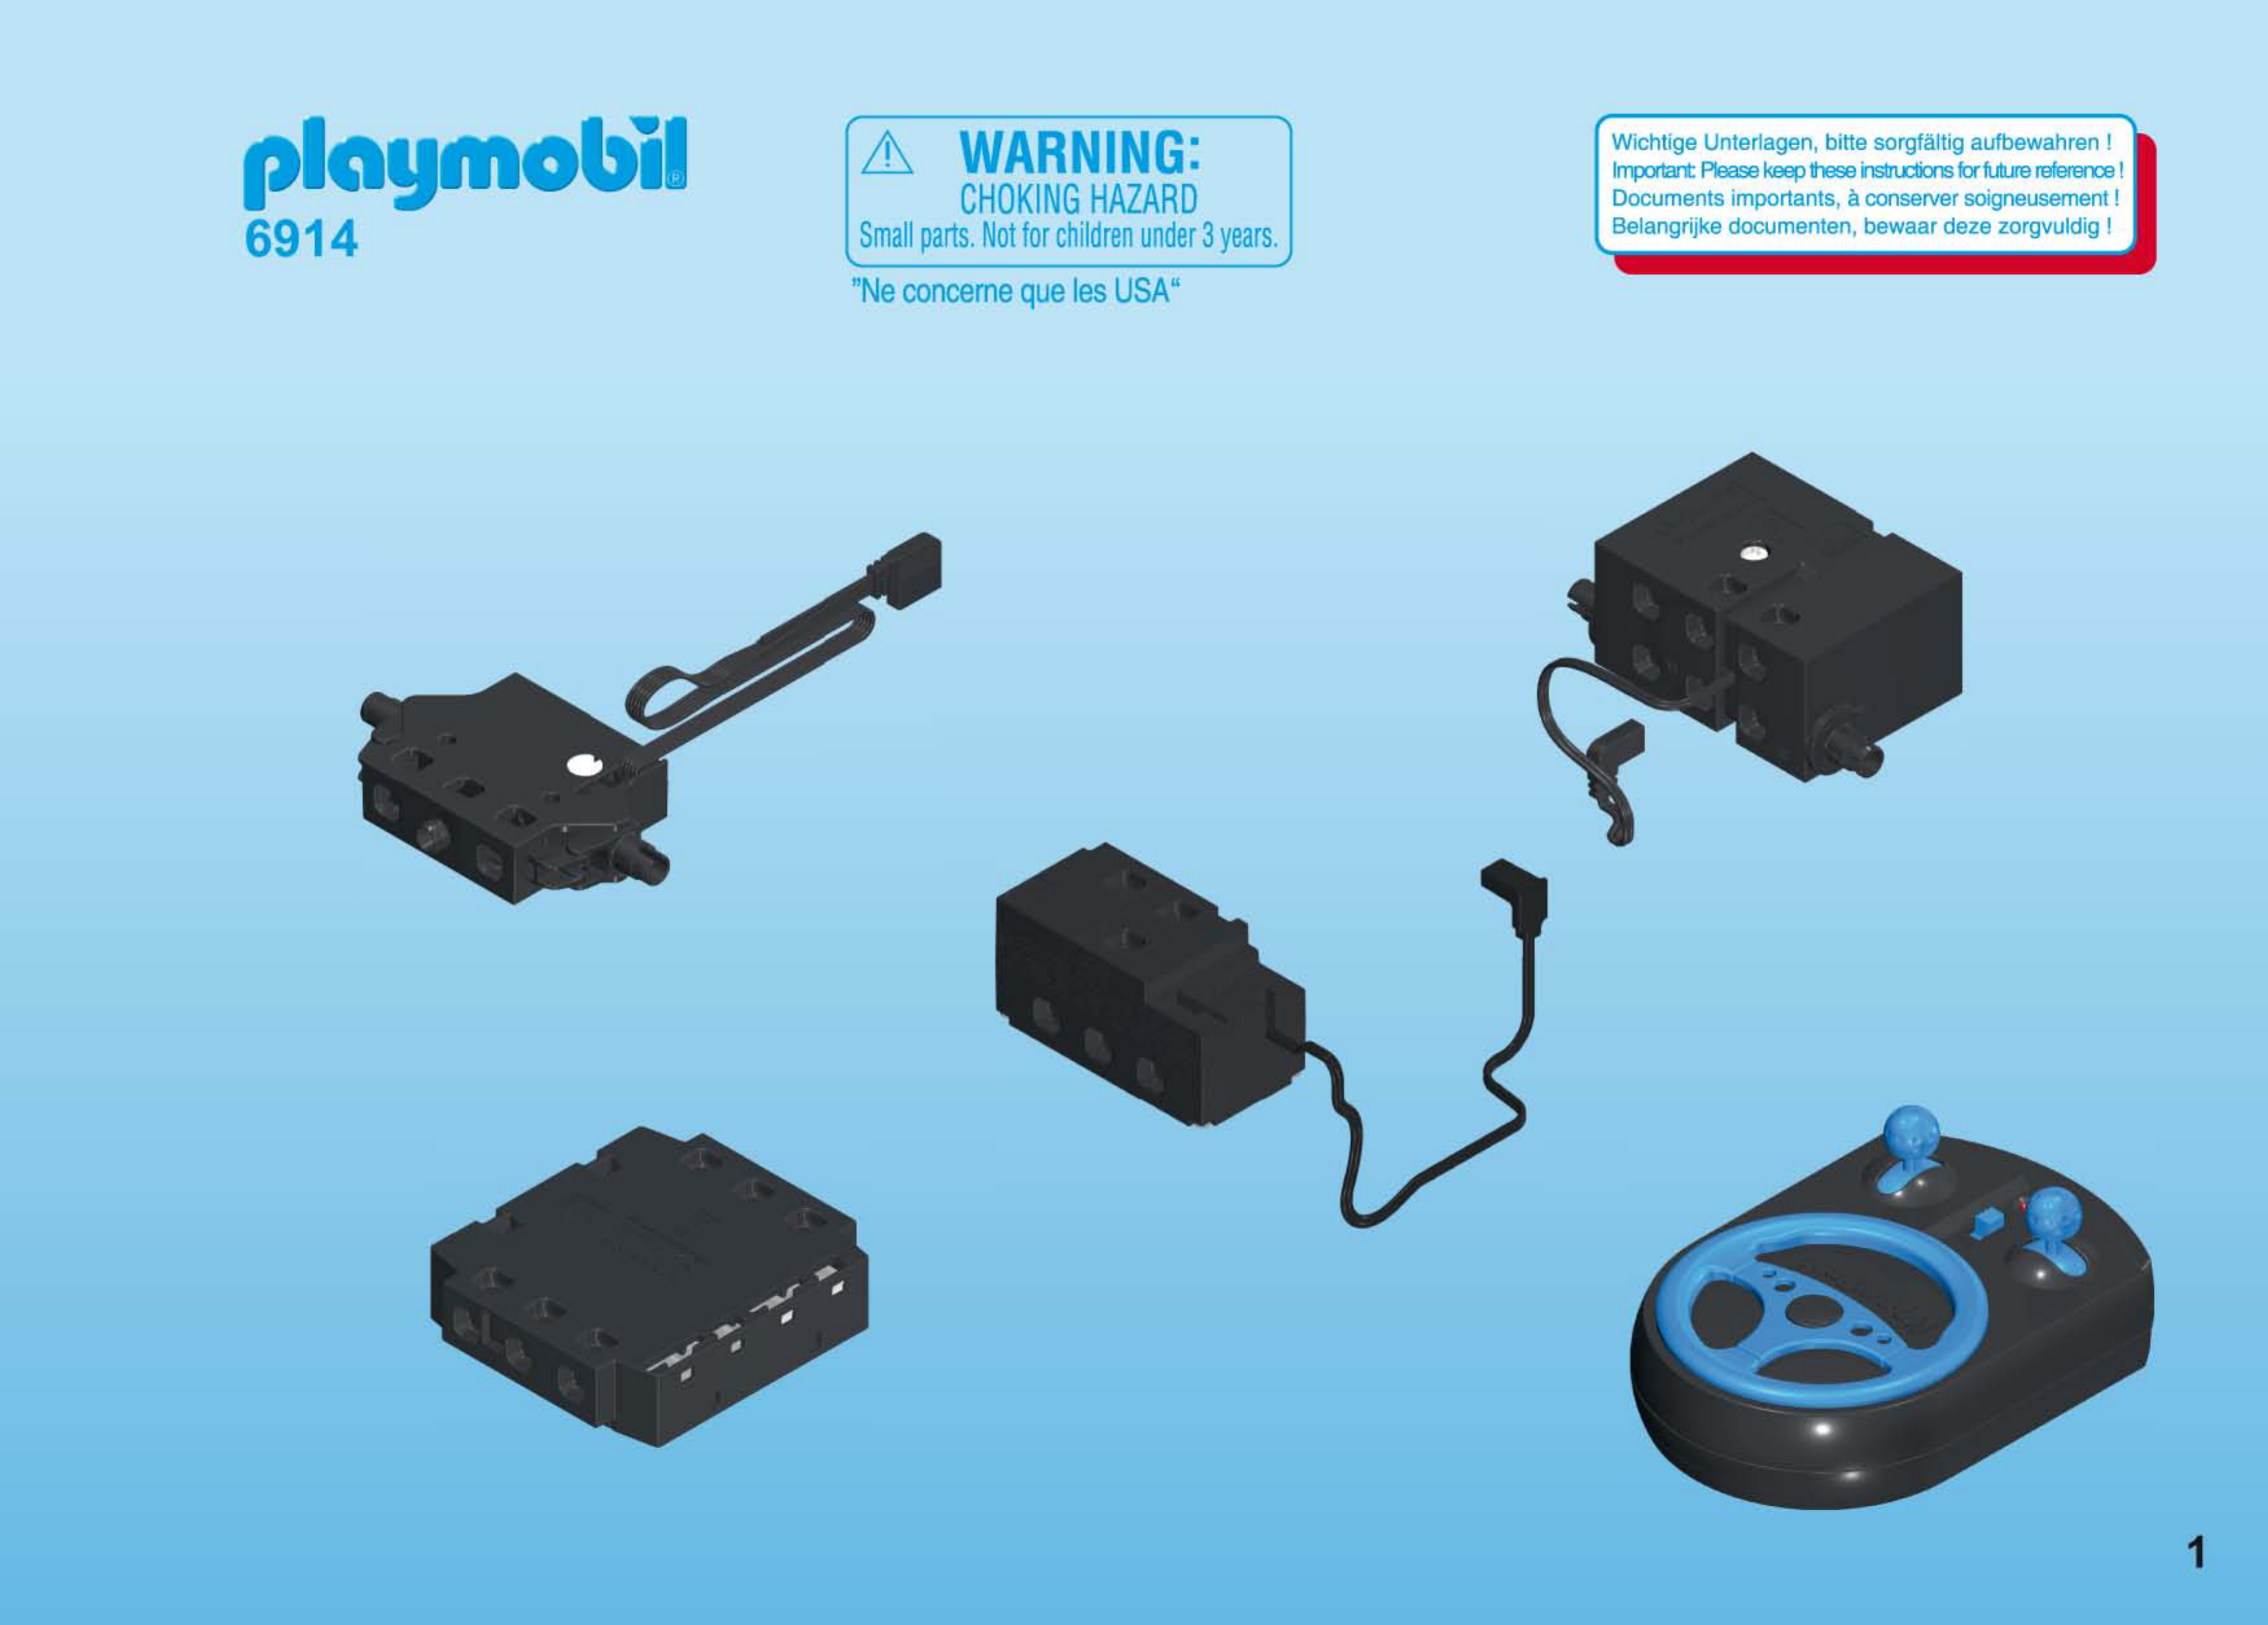 Playmobil 6914 - Module de radiocommande 2.4 Ghz - Comparer avec